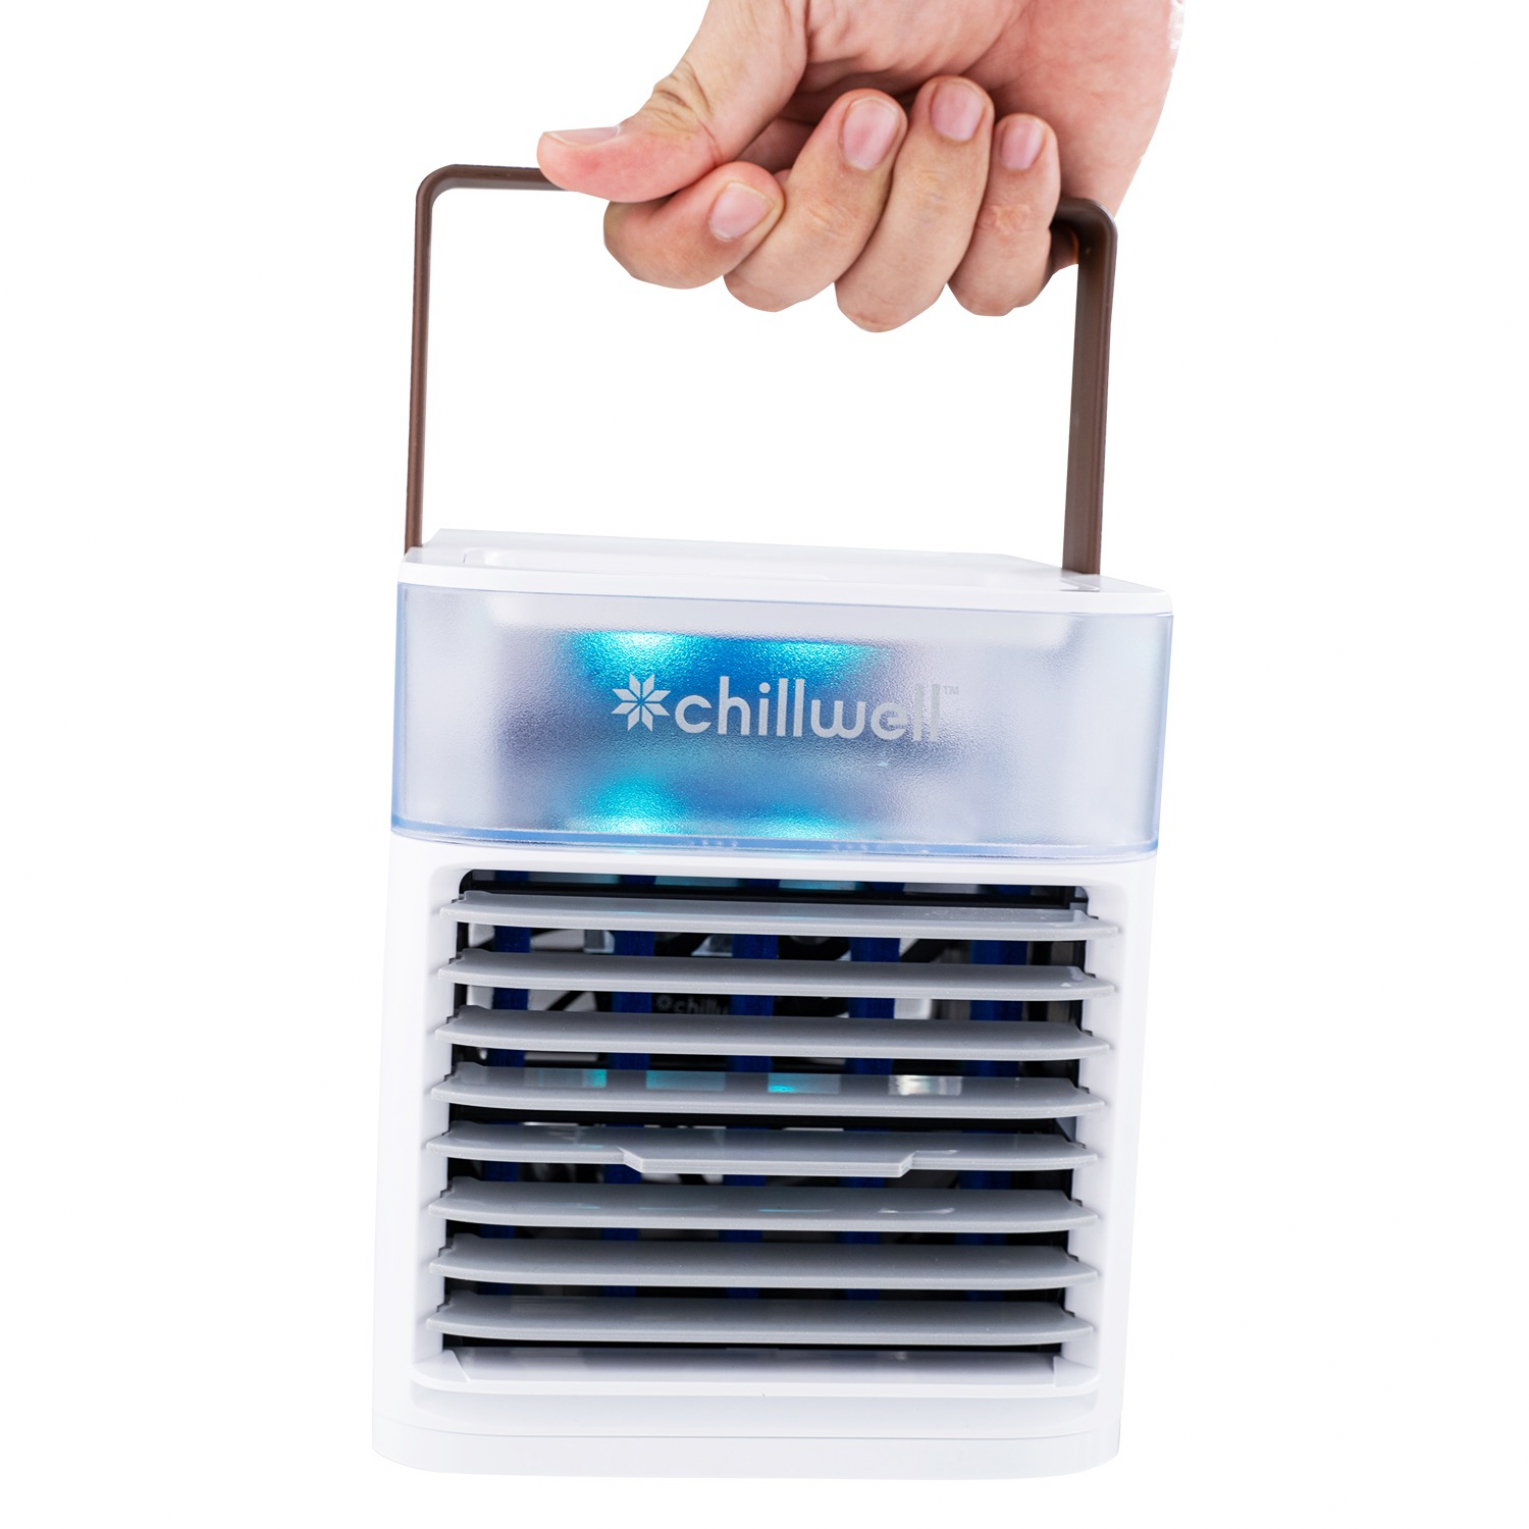 Mini Air Conditioner Chillwell Ac